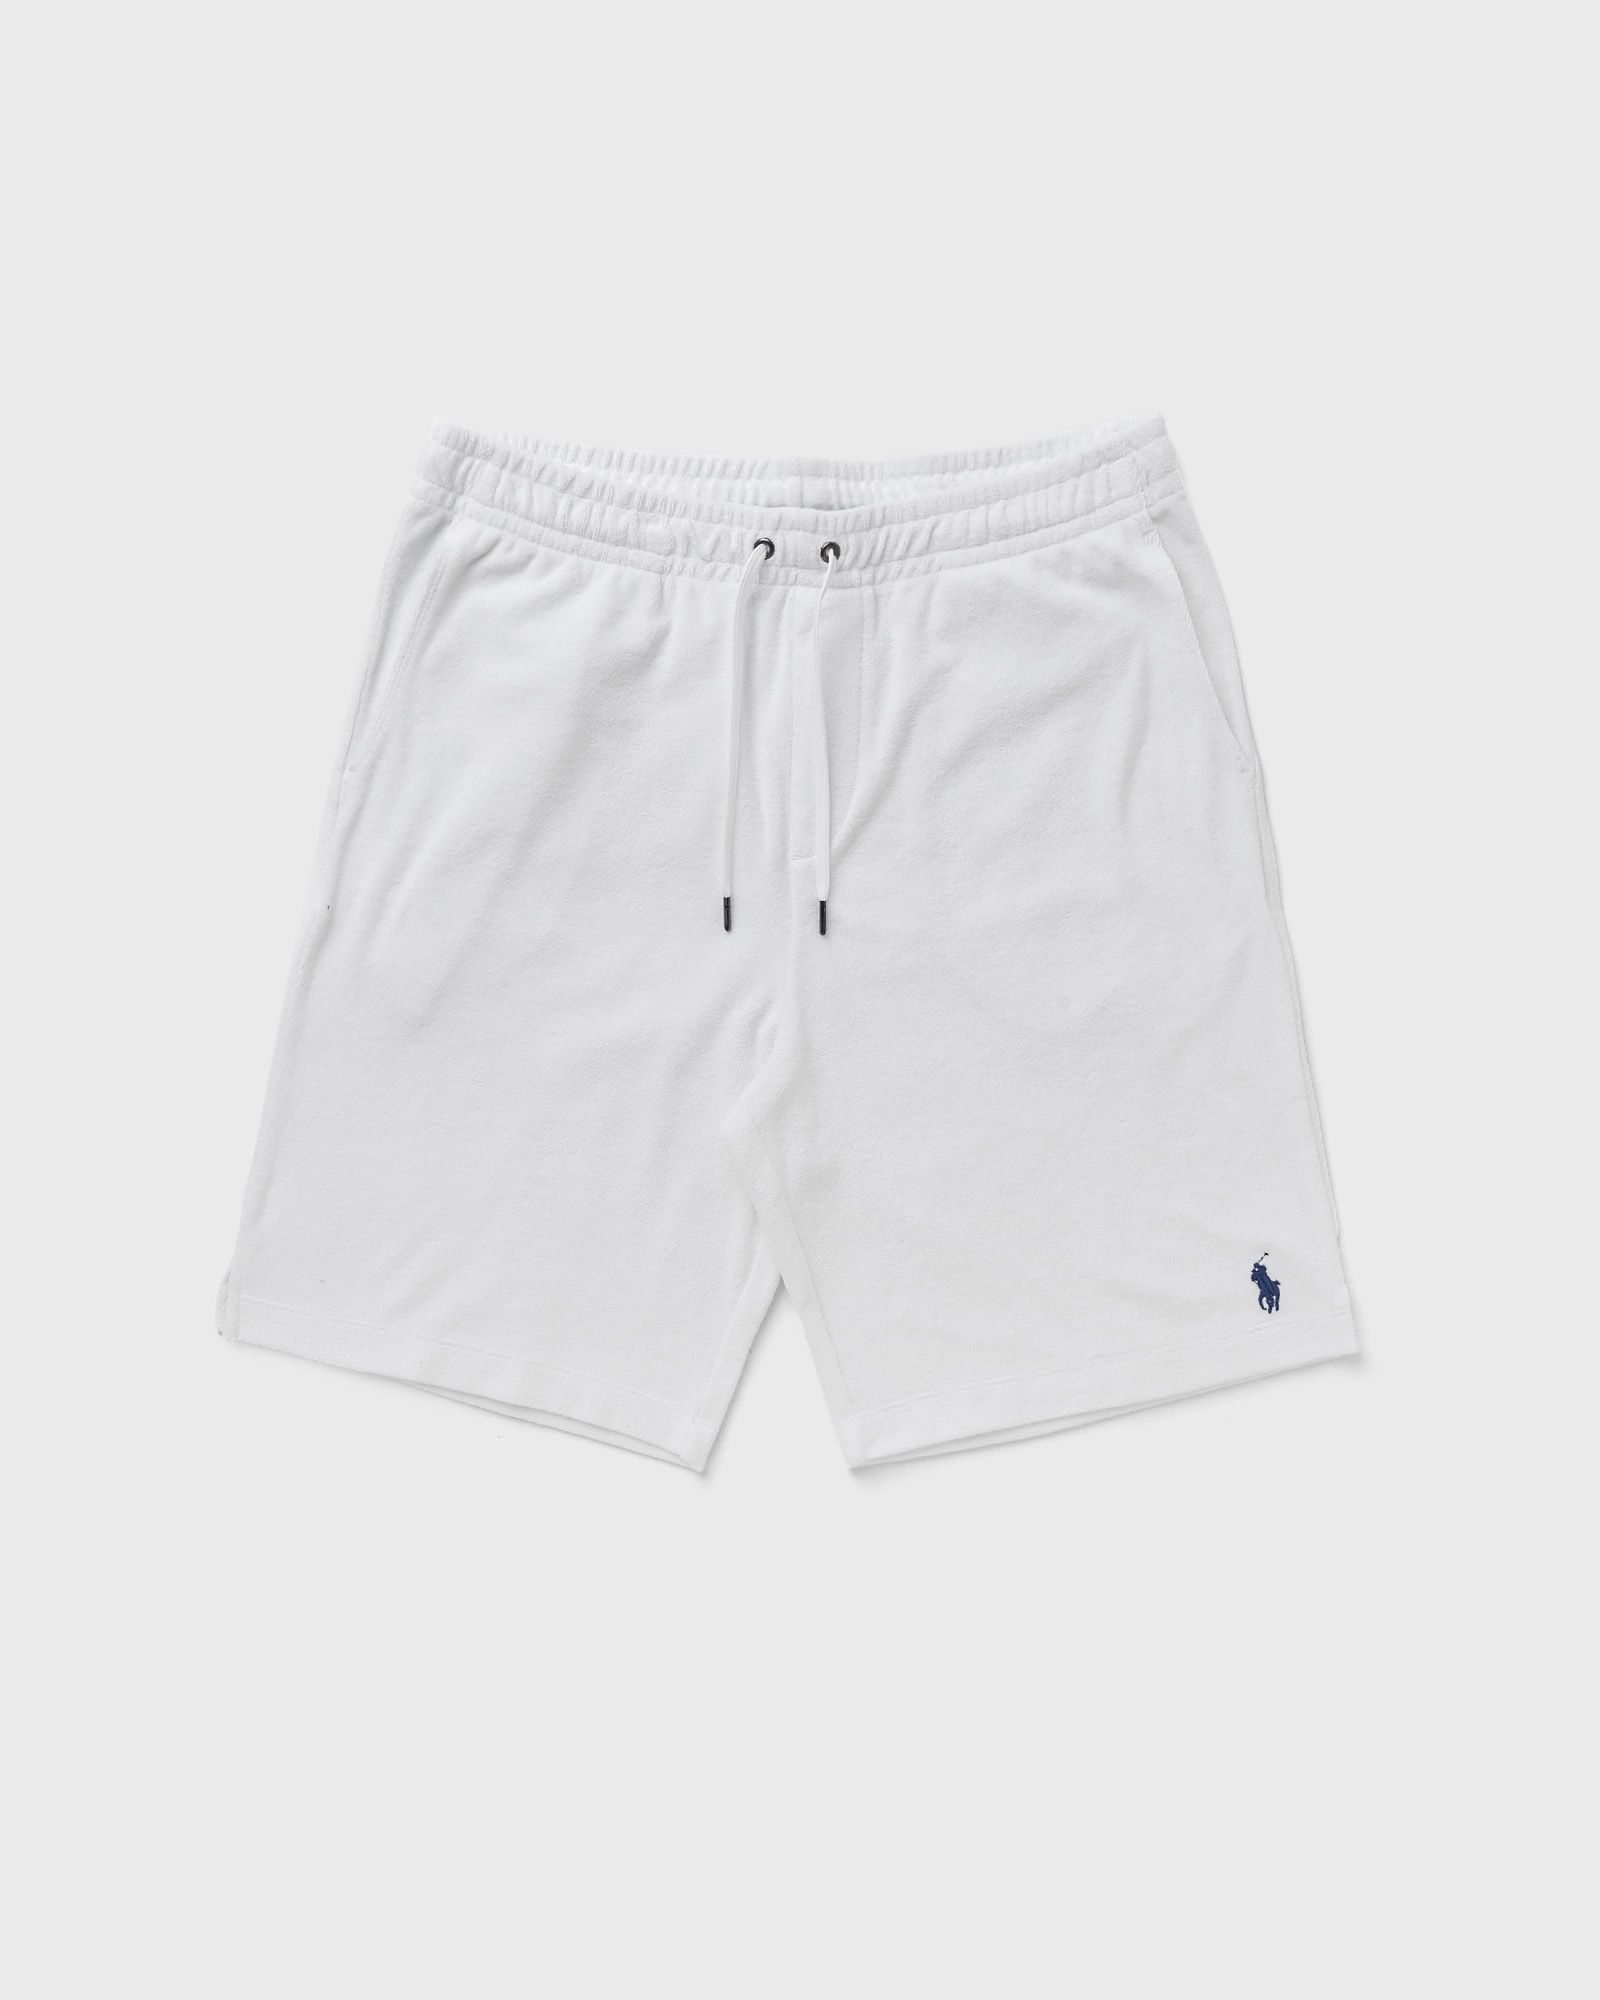 Polo Ralph Lauren - athletic short men sport & team shorts white in größe:xl